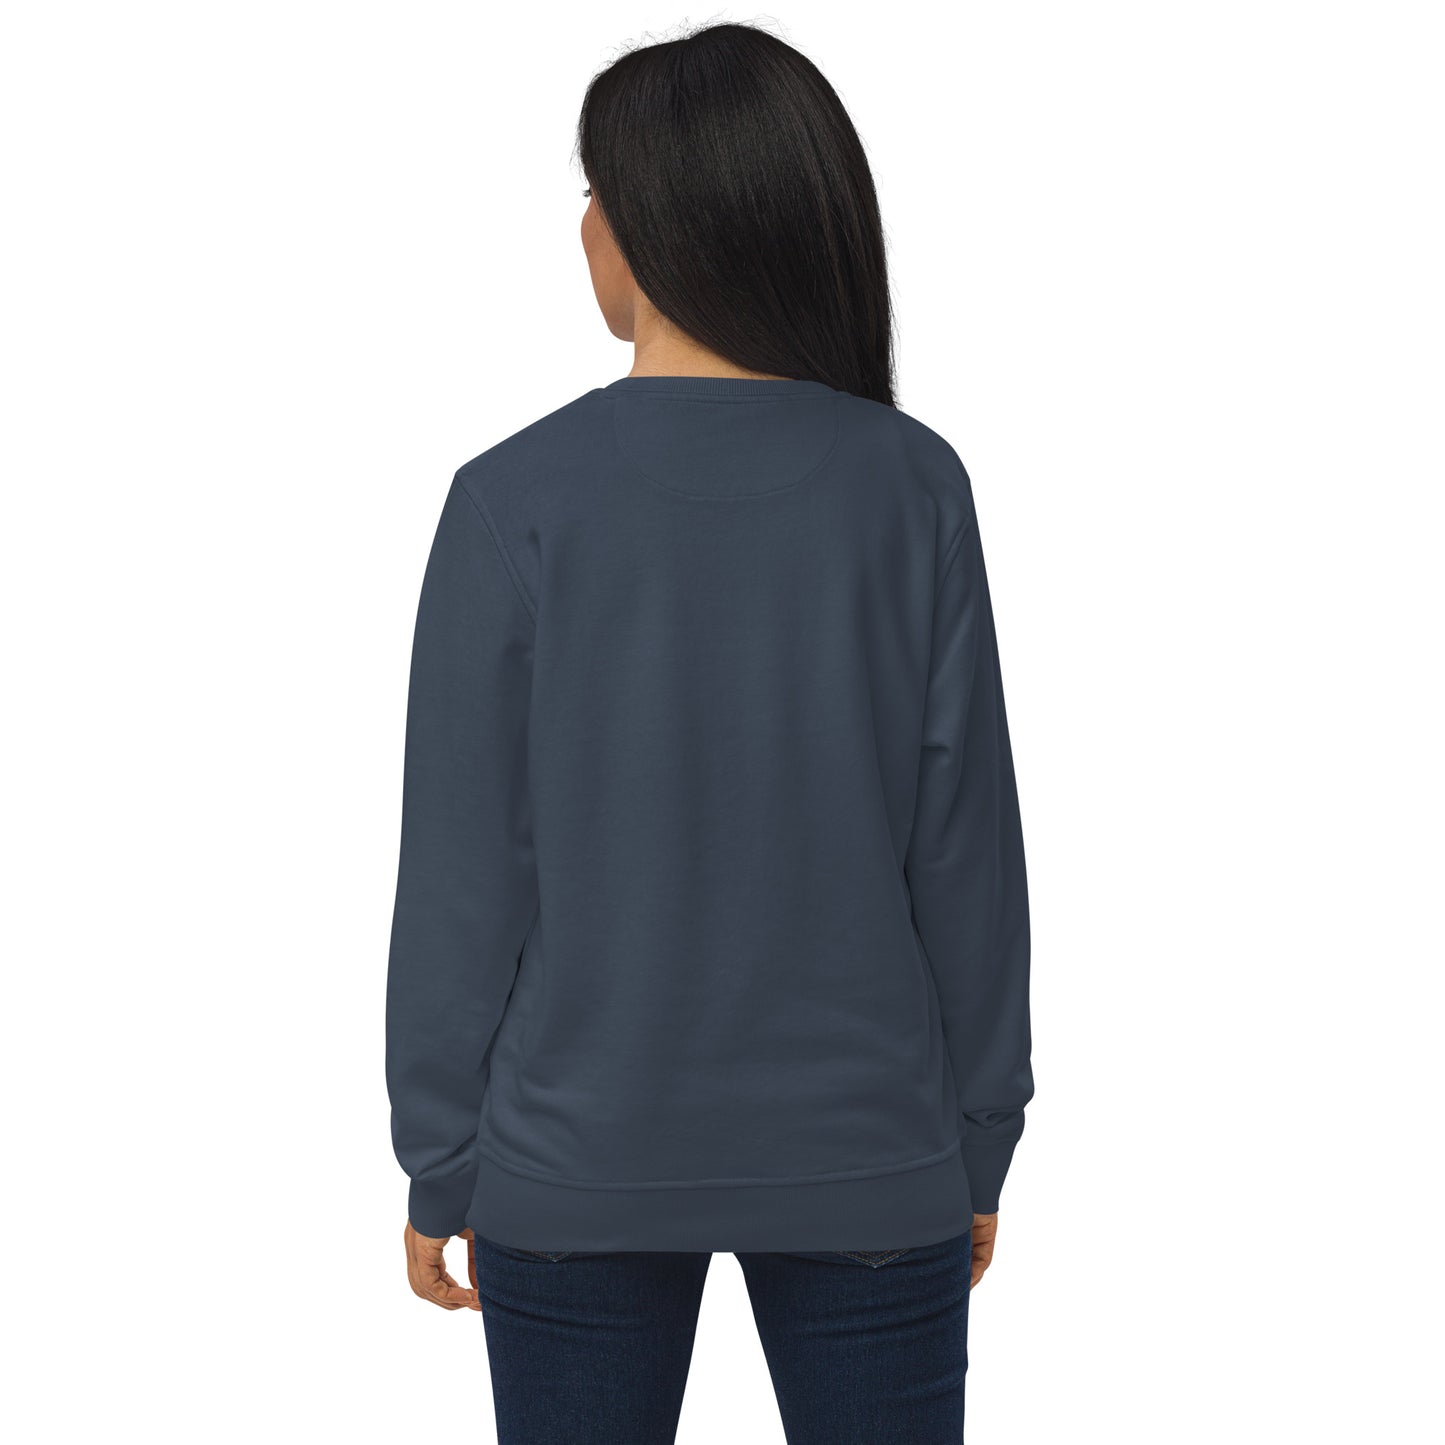 Effectuation Unisex Organic Sweatshirt